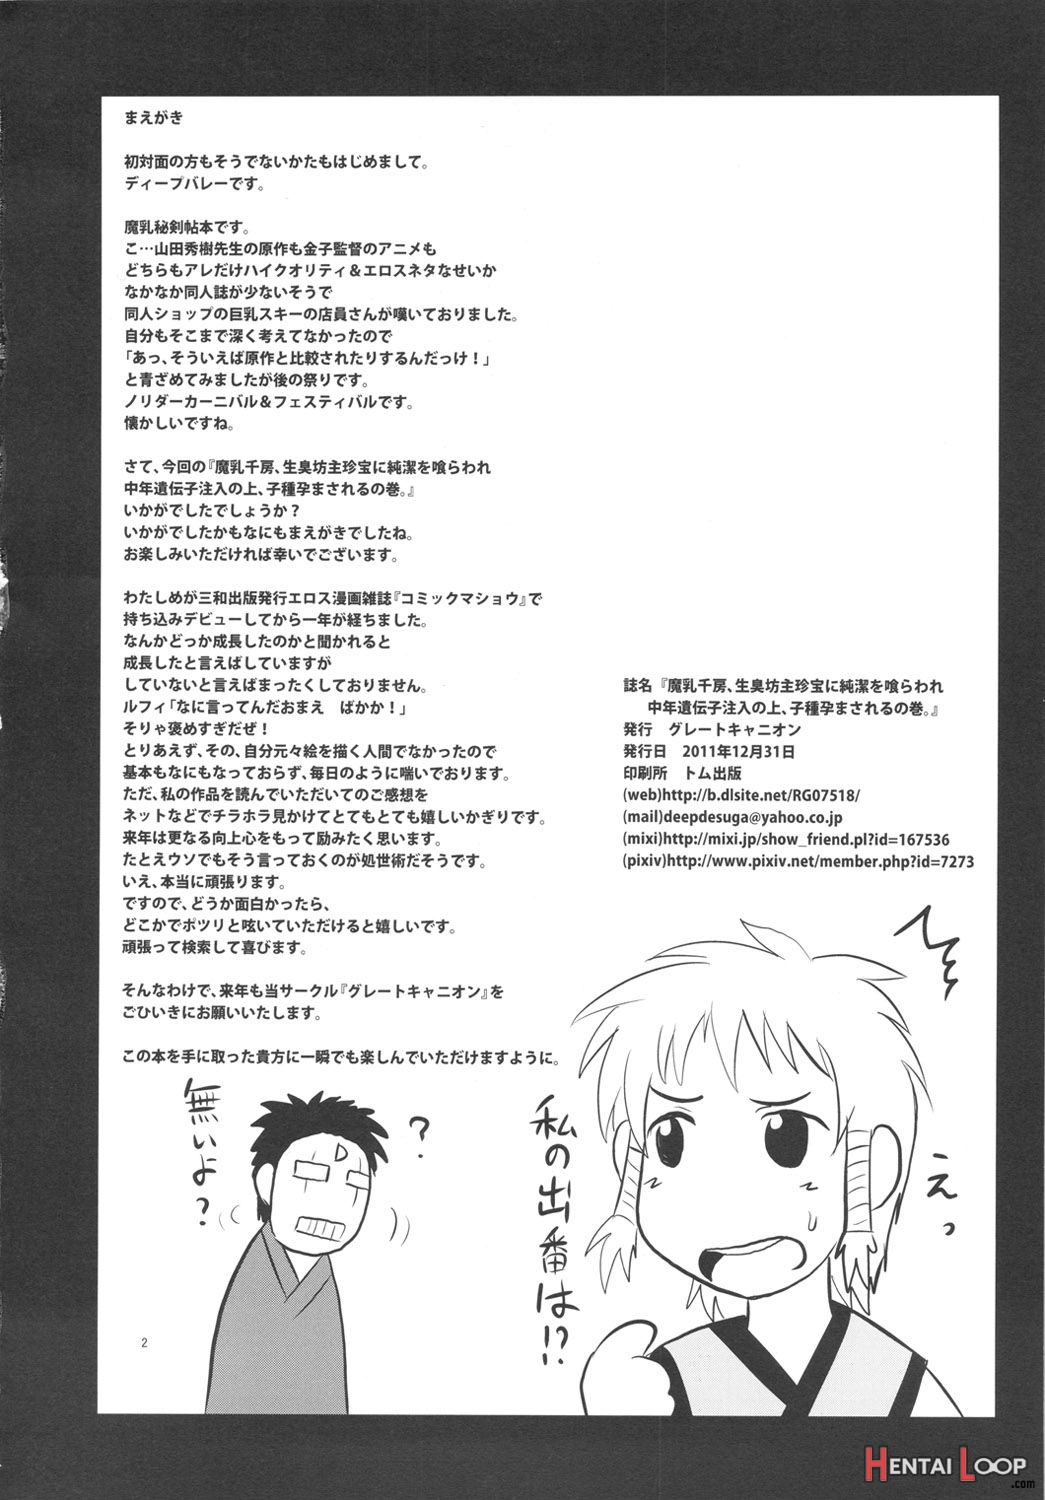 Manyuu Chifusa, Namagusa Bouzu Chinpou Ni Junketsu O Kuraware Chuunen Idenshi Chuunyuu No Ue, Kodane Haramasareru No Maki. page 2